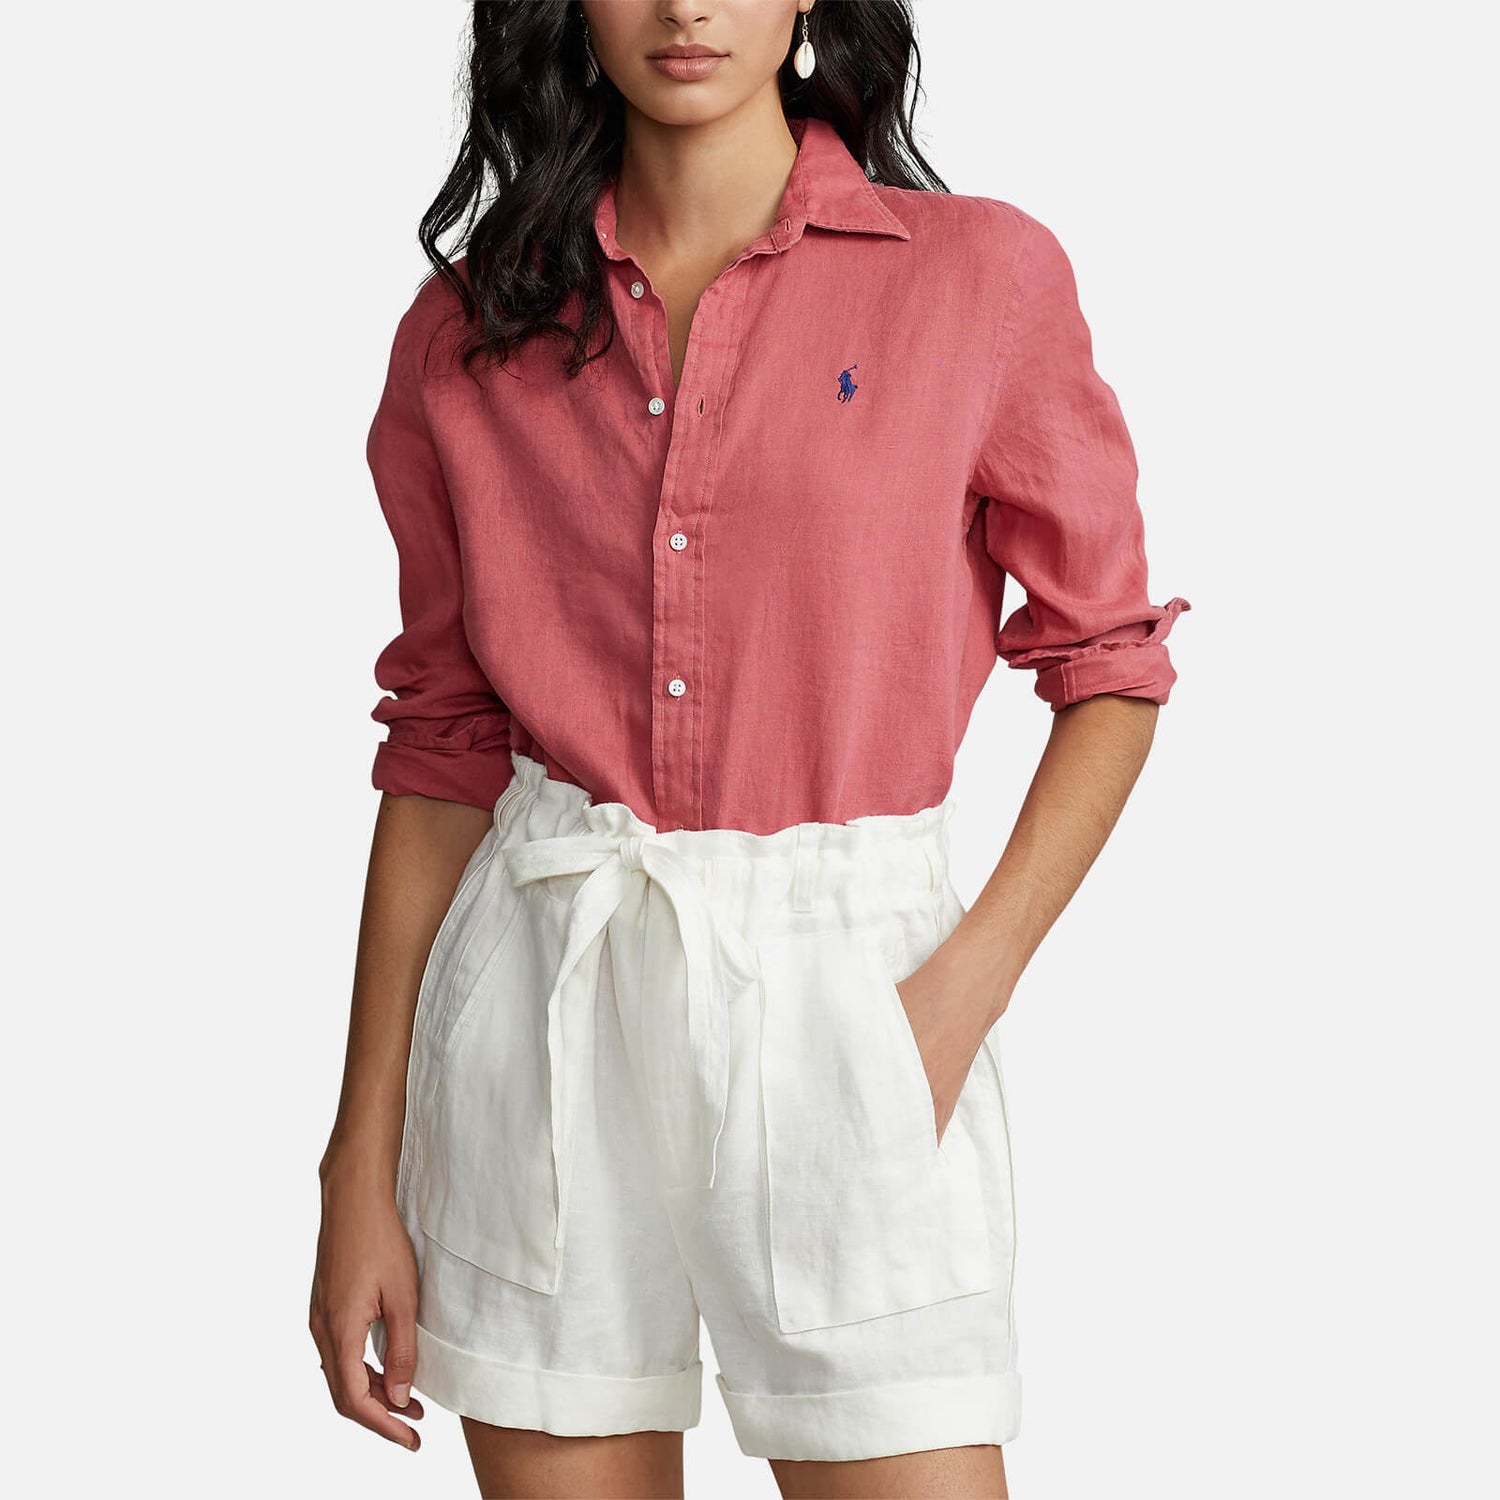 Polo Ralph Lauren Women's Long Sleeve Shirt - Adirondack Berry